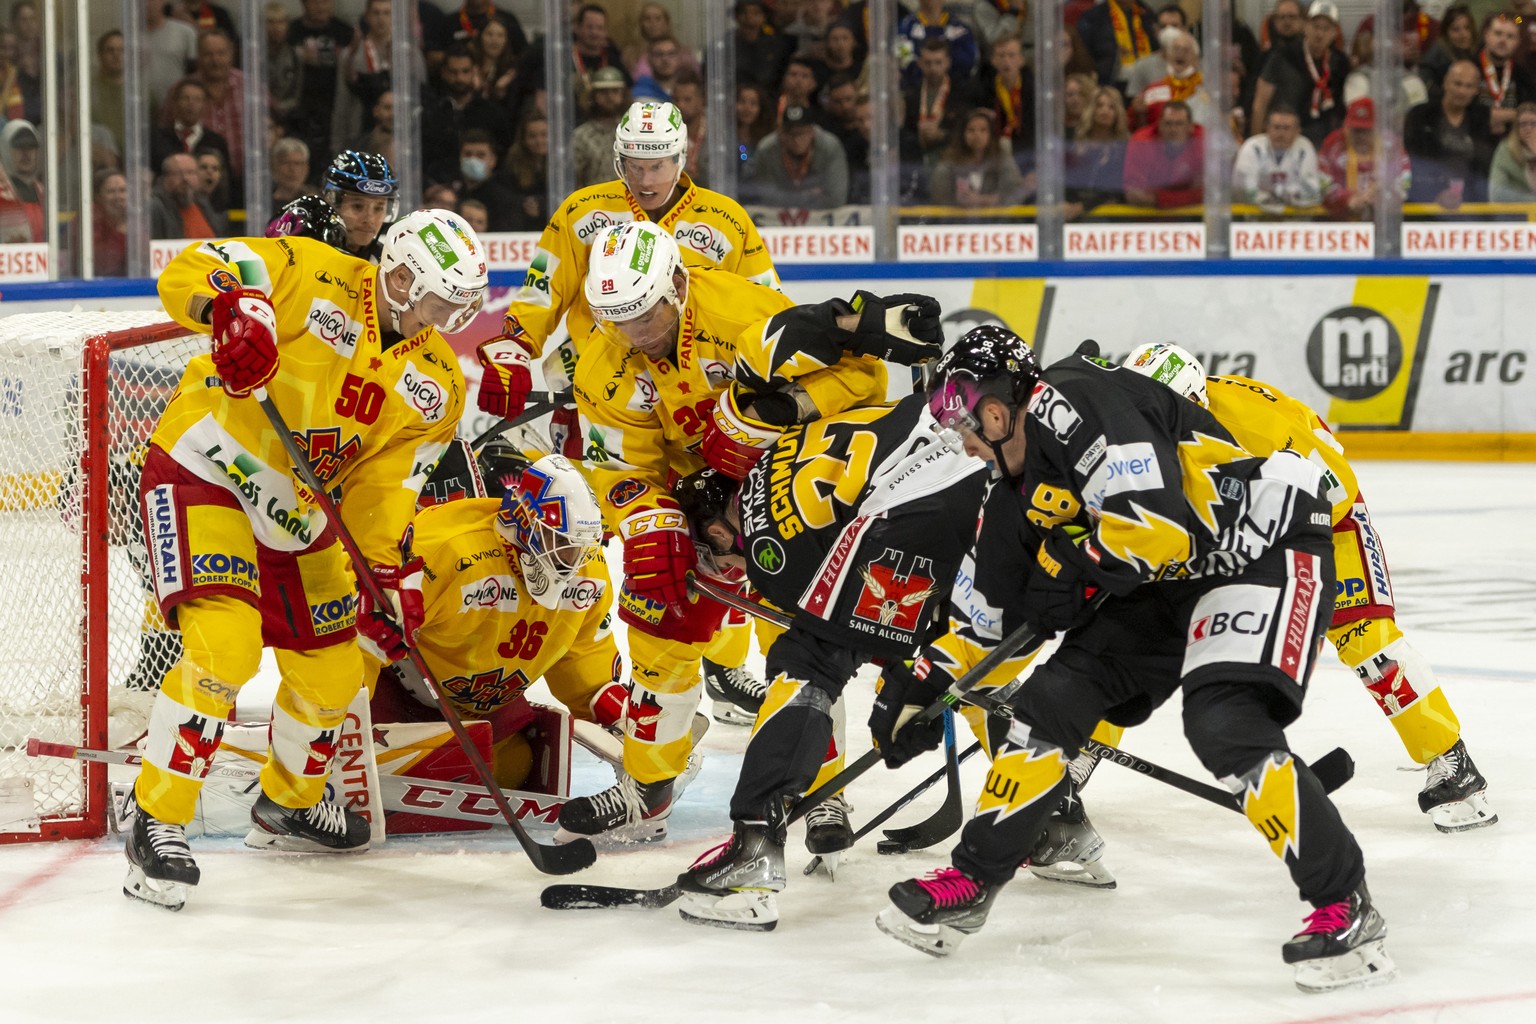 Ajoies Spieler scheitern an Biels Abwehr beim Eishockey-Qualifikationsspiel der National League zwischen dem HC Ajoie und dem EHC Biel-Bienne in der Raiffeisen Arena in Porrentruy, am Dienstag, 7. Sep ...